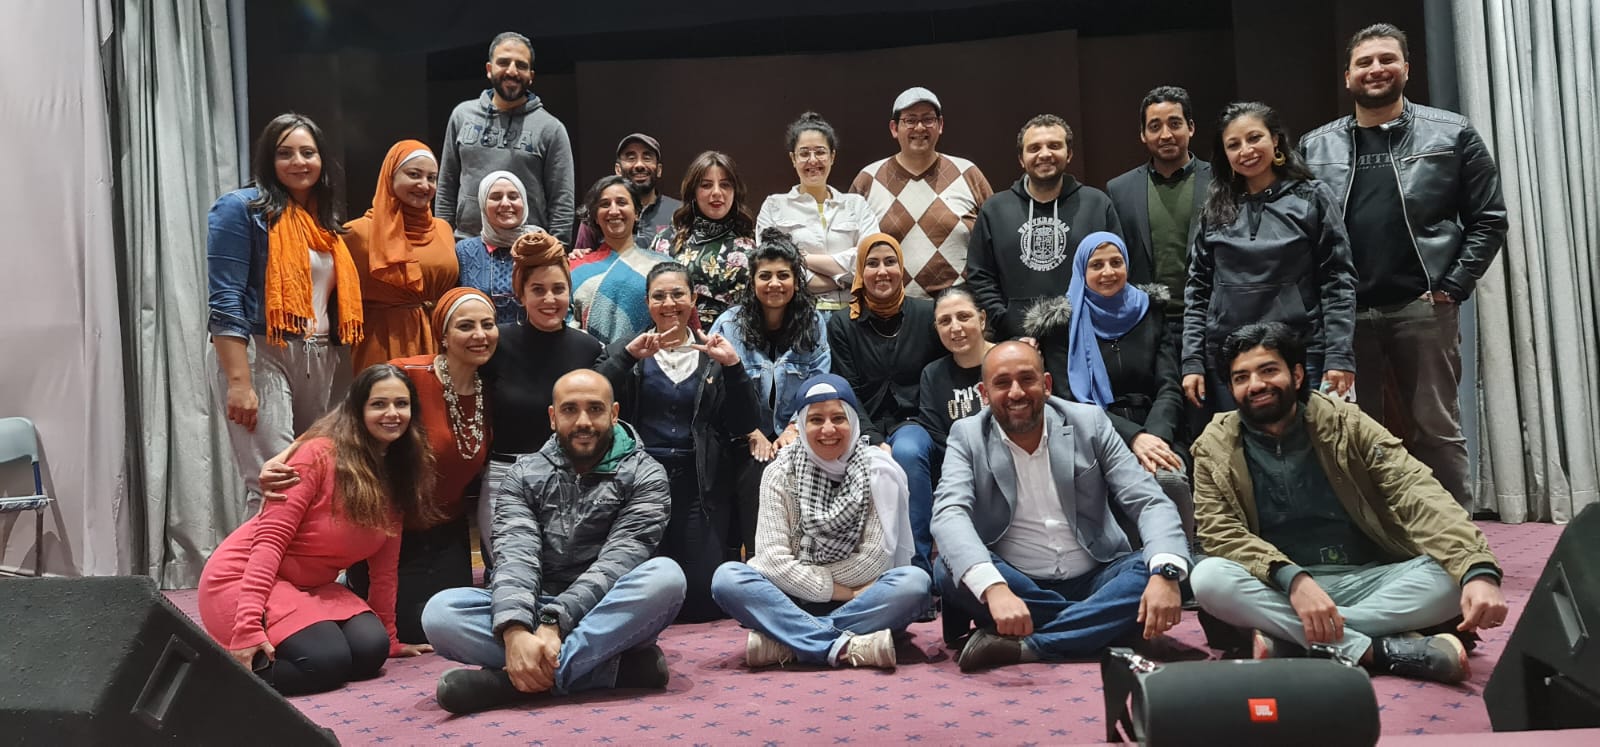 بداية جديدة لكورس المسرح بمكتبة مصر الجديدة العامة لتنمية مهارات المسرح والكتابة